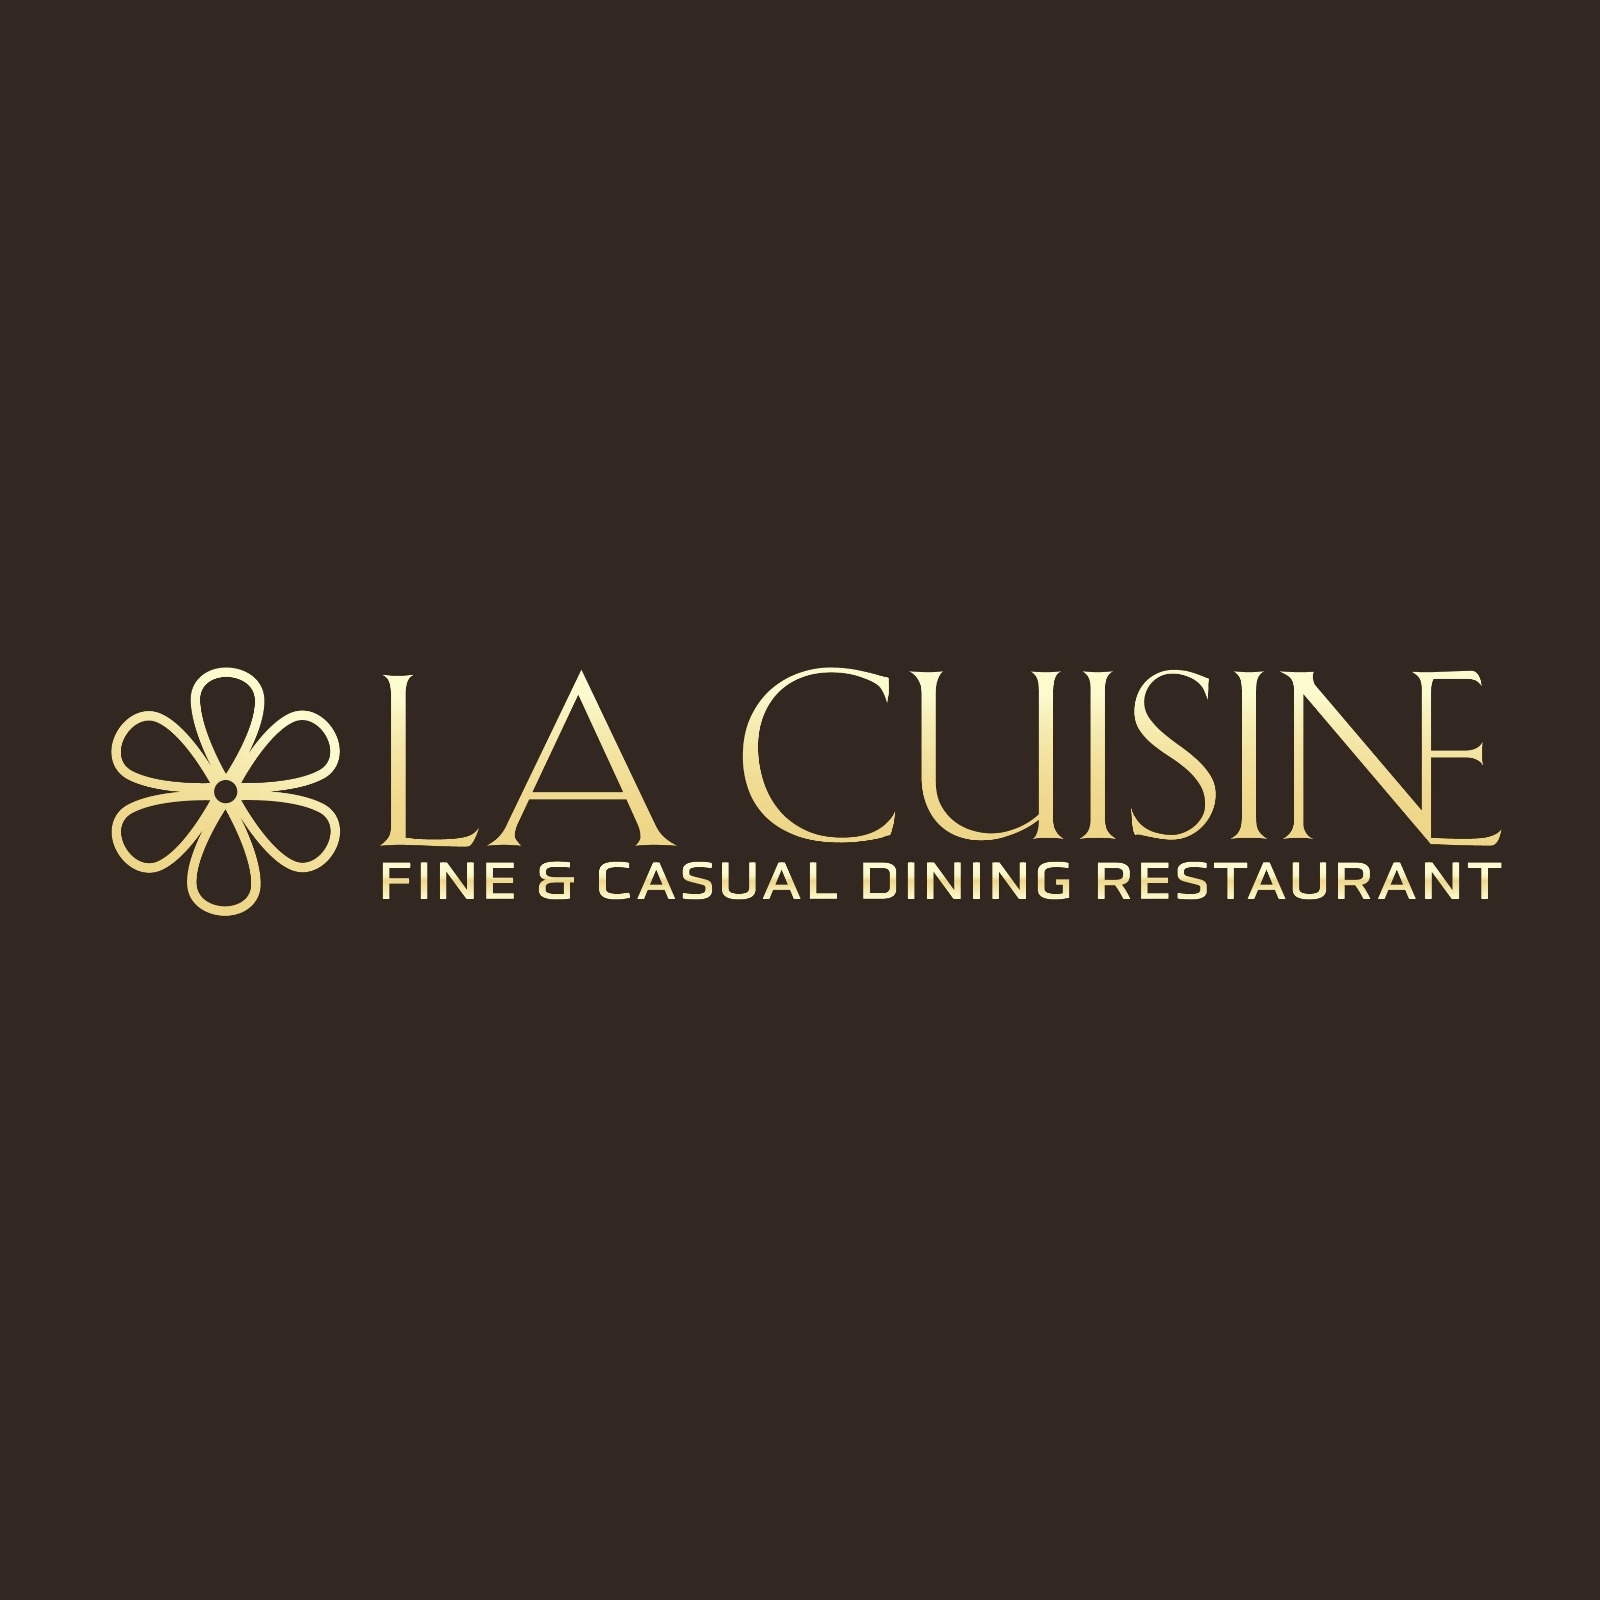 lacuisine Restaurant